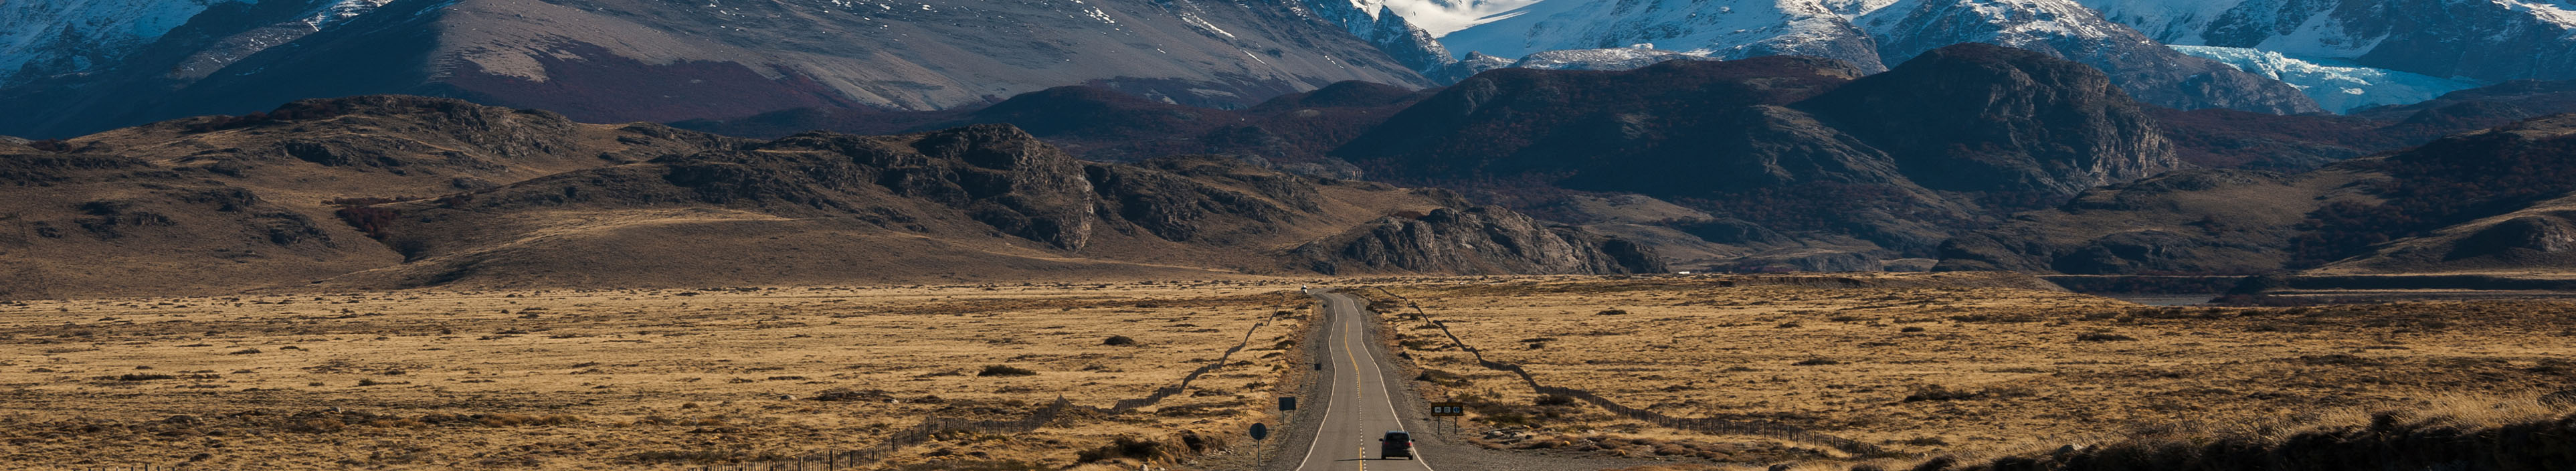 Landschaft in Patagonien, Argentinien